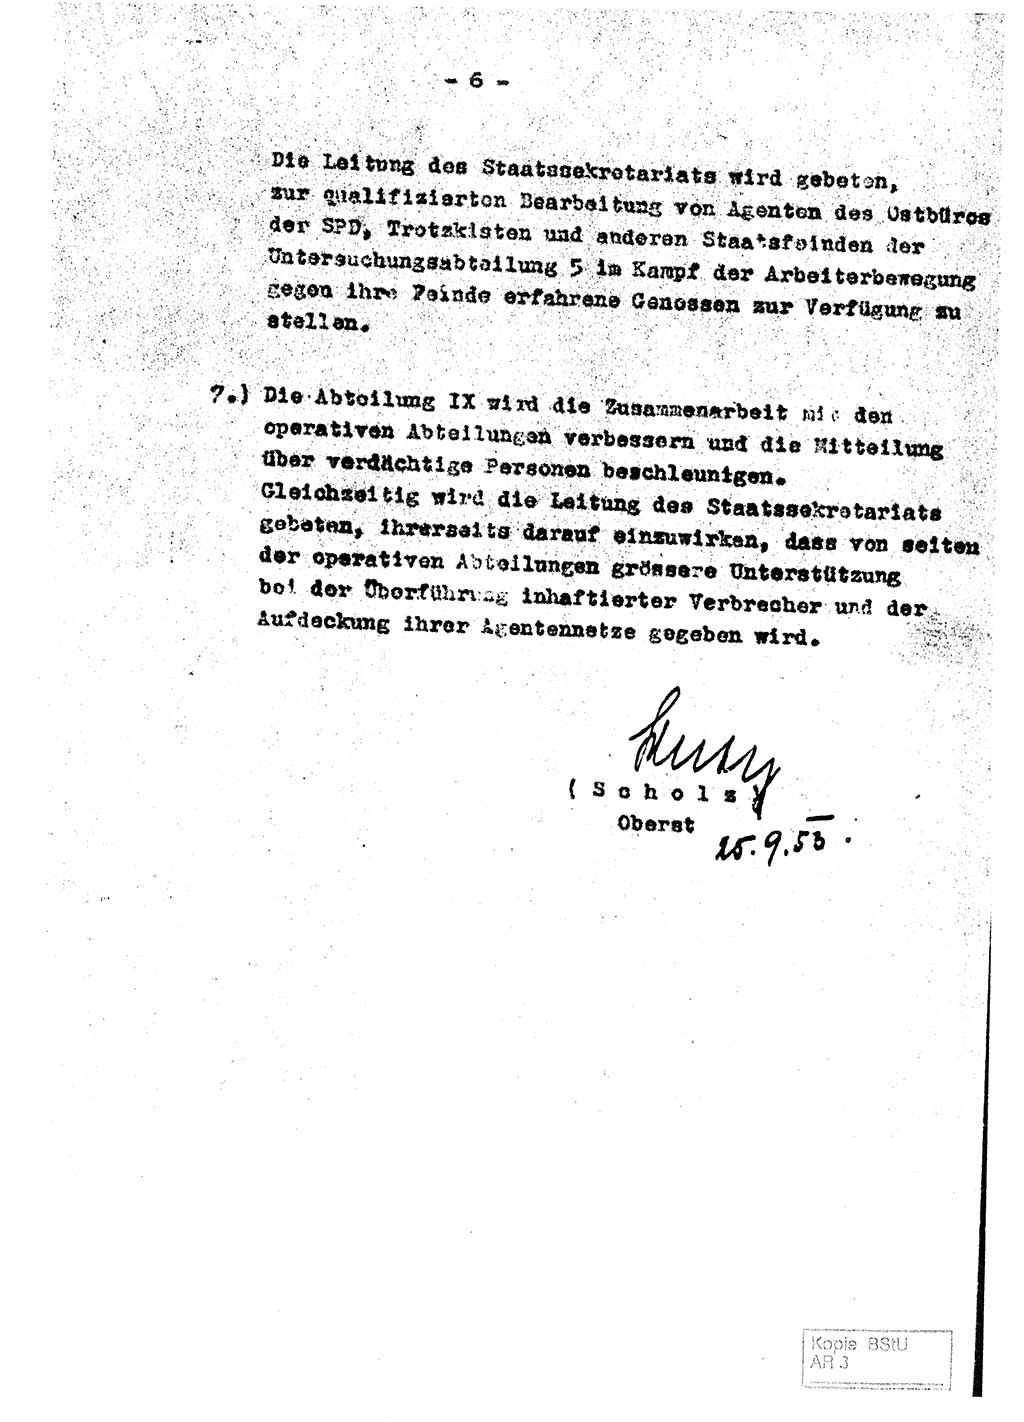 Staatssekretariat für Staatssicherheit (SfS) [Deutsche Demokratische Republik (DDR)], Abteilung (Abt.) Ⅸ, Berlin 1953, Seite 6 (Ber. SfS DDR Abt. Ⅸ /53 1953, S. 6)